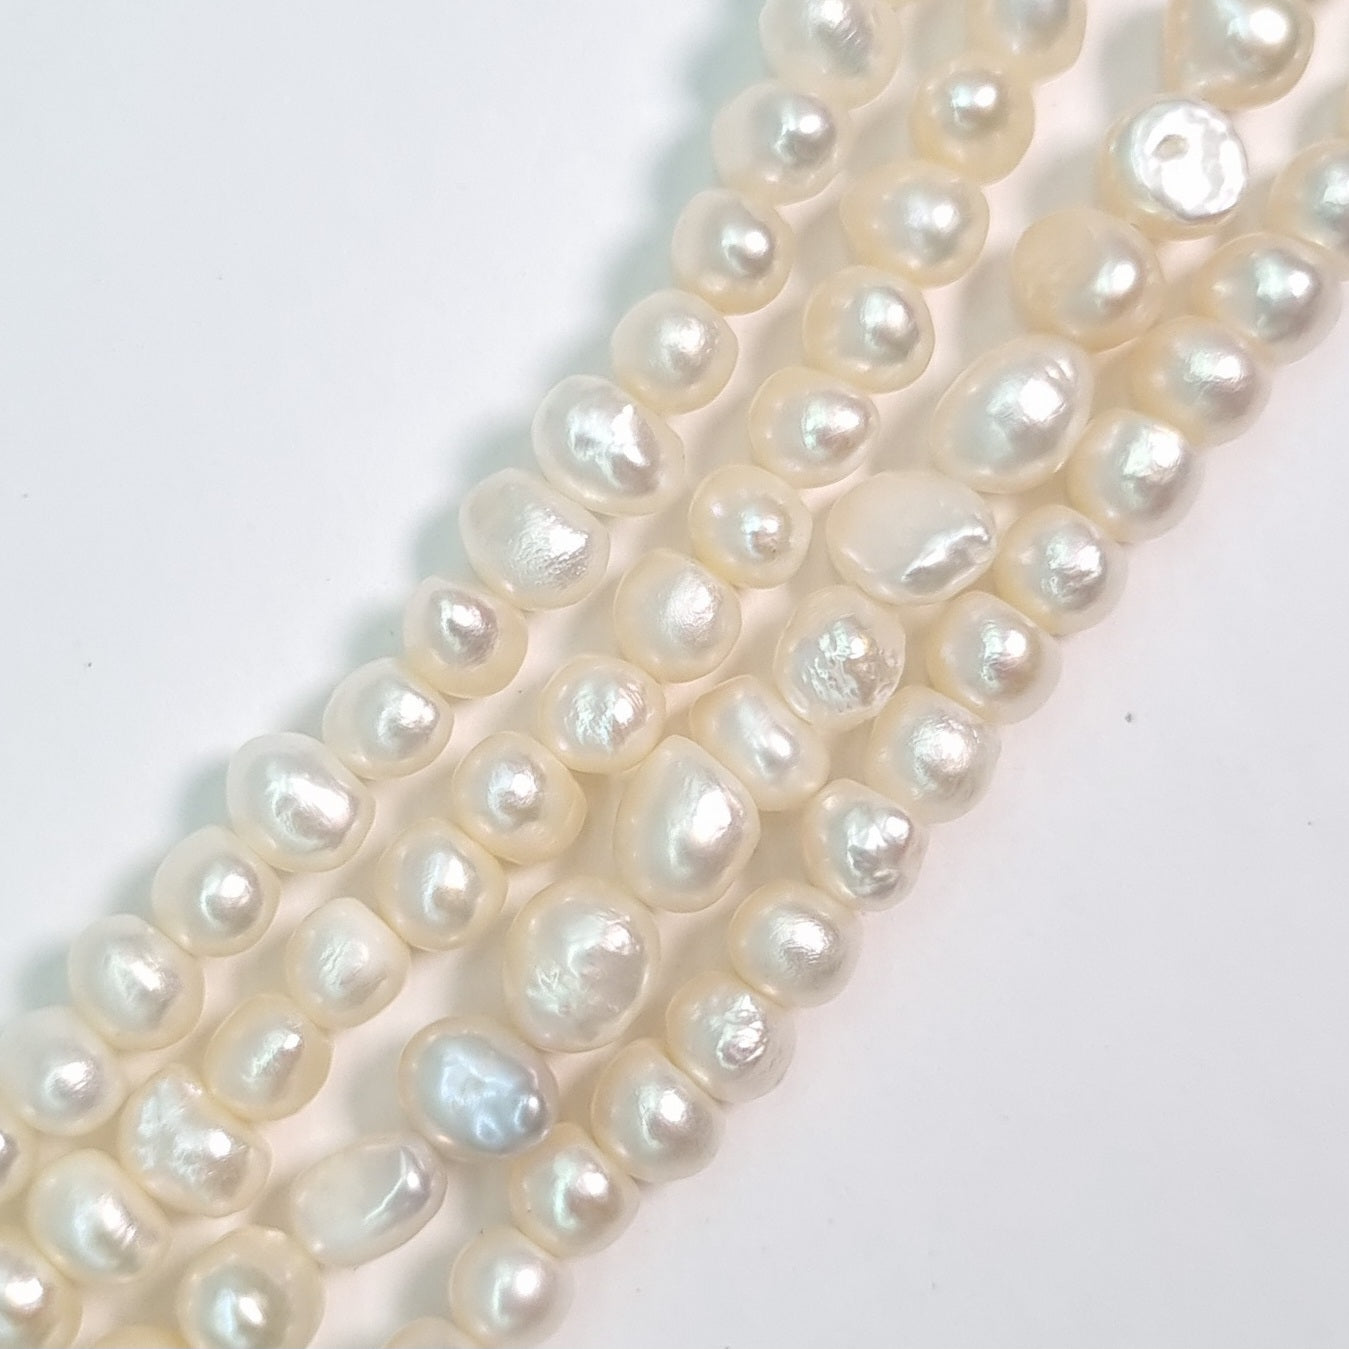 Perla Cultivada de 4-6 mm. por tira O2505